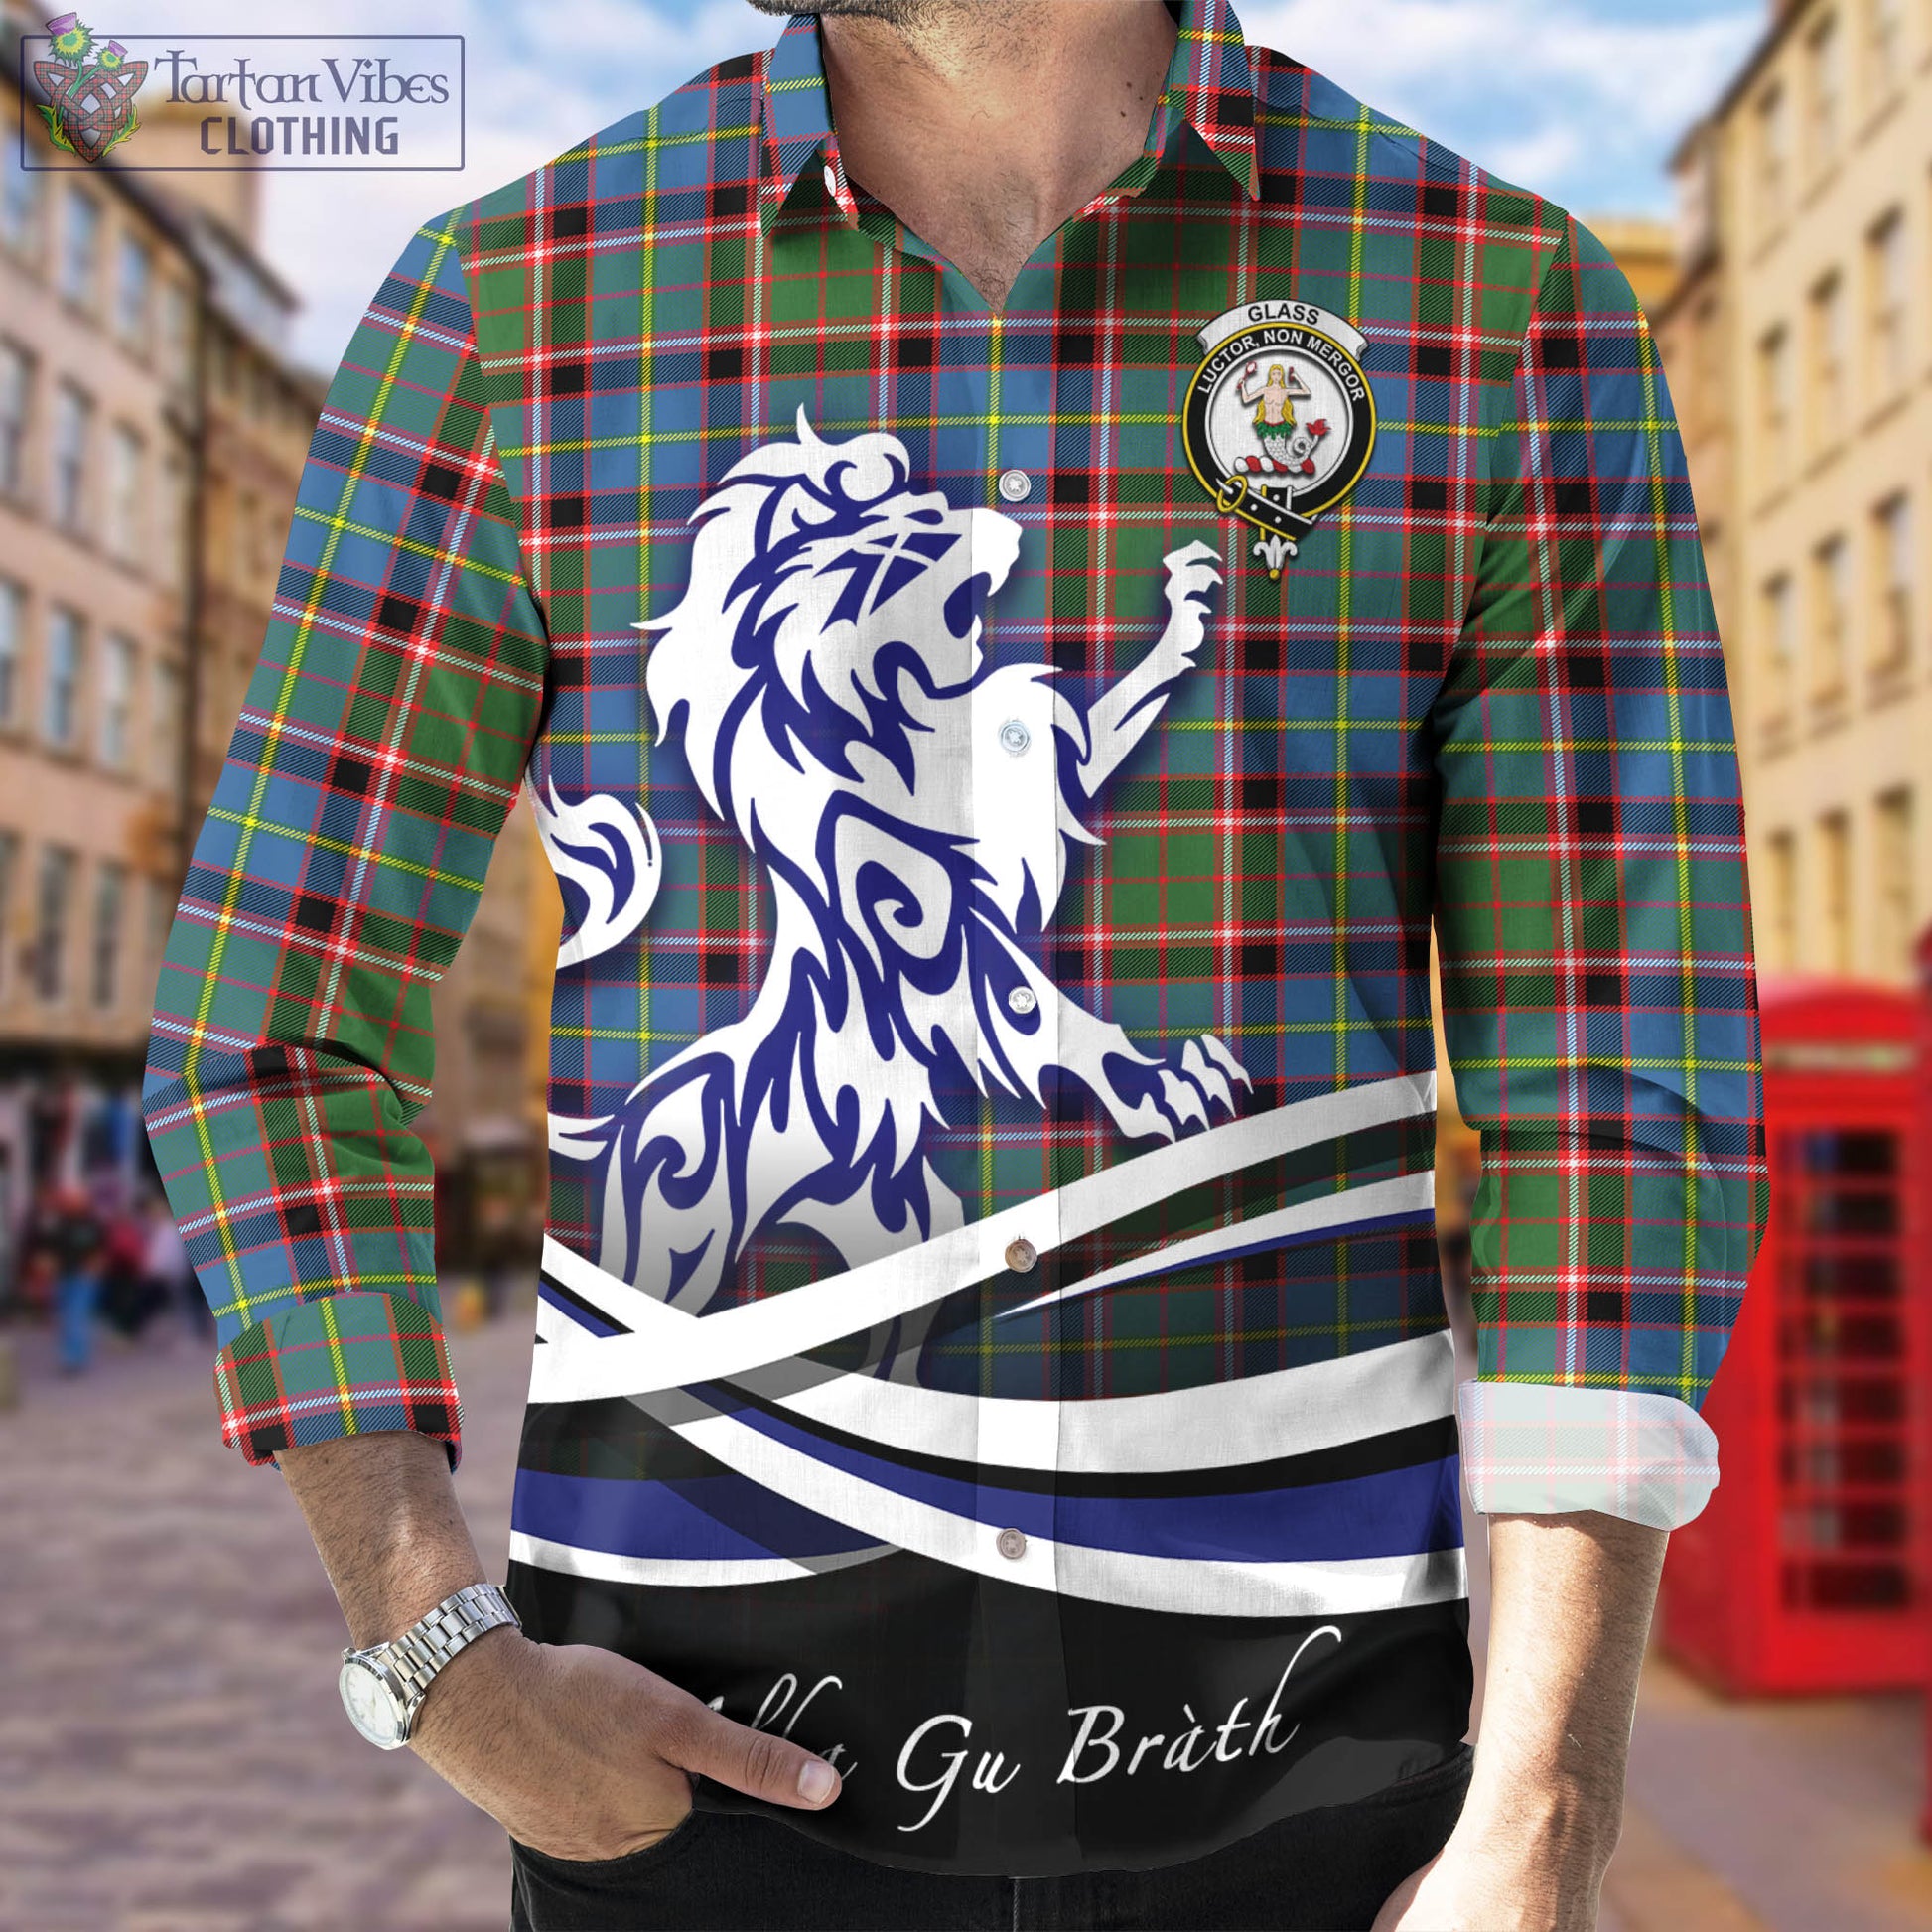 glass-tartan-long-sleeve-button-up-shirt-with-alba-gu-brath-regal-lion-emblem